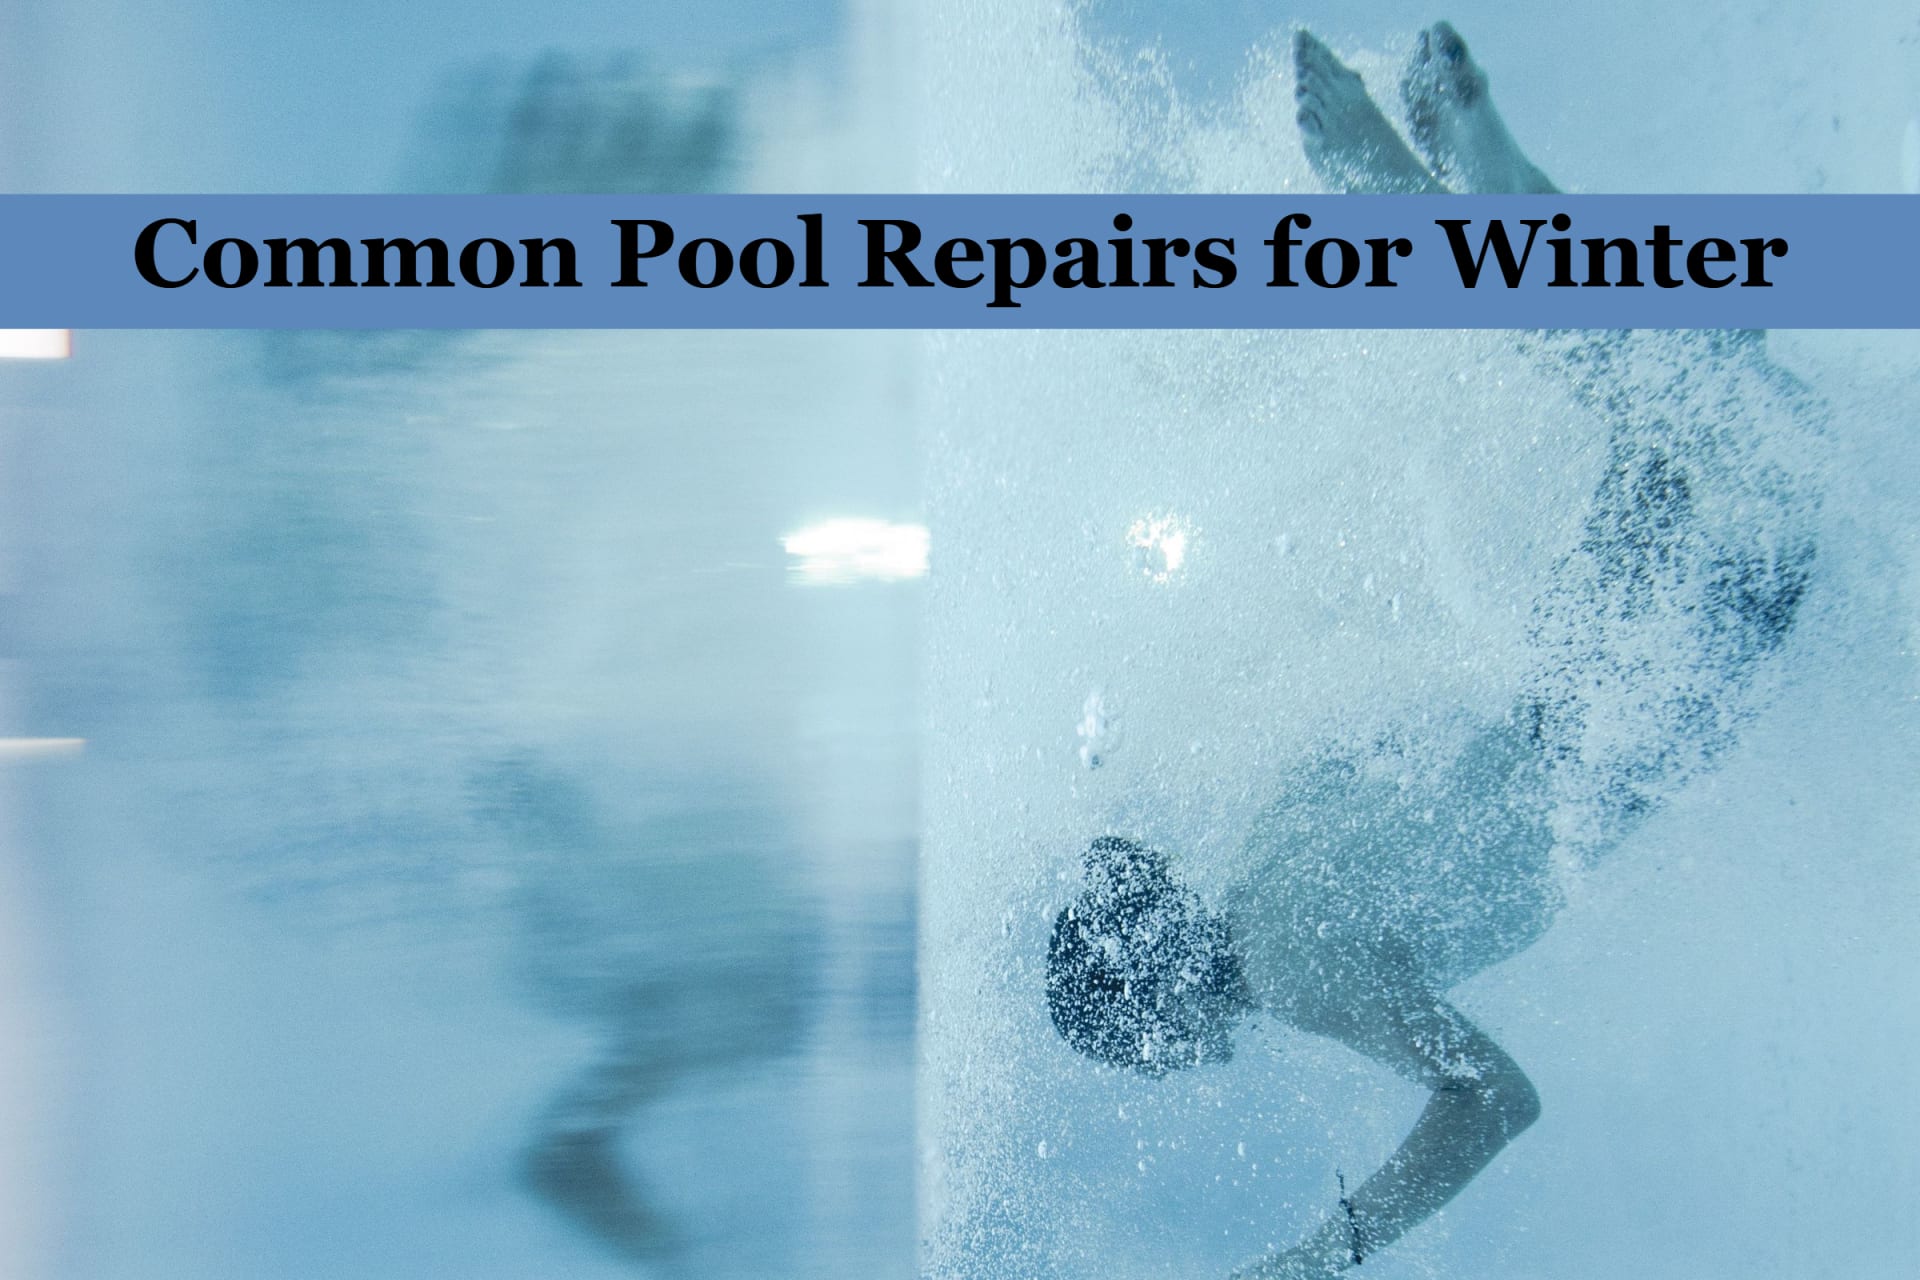 Winter Swimming Pool Repairs